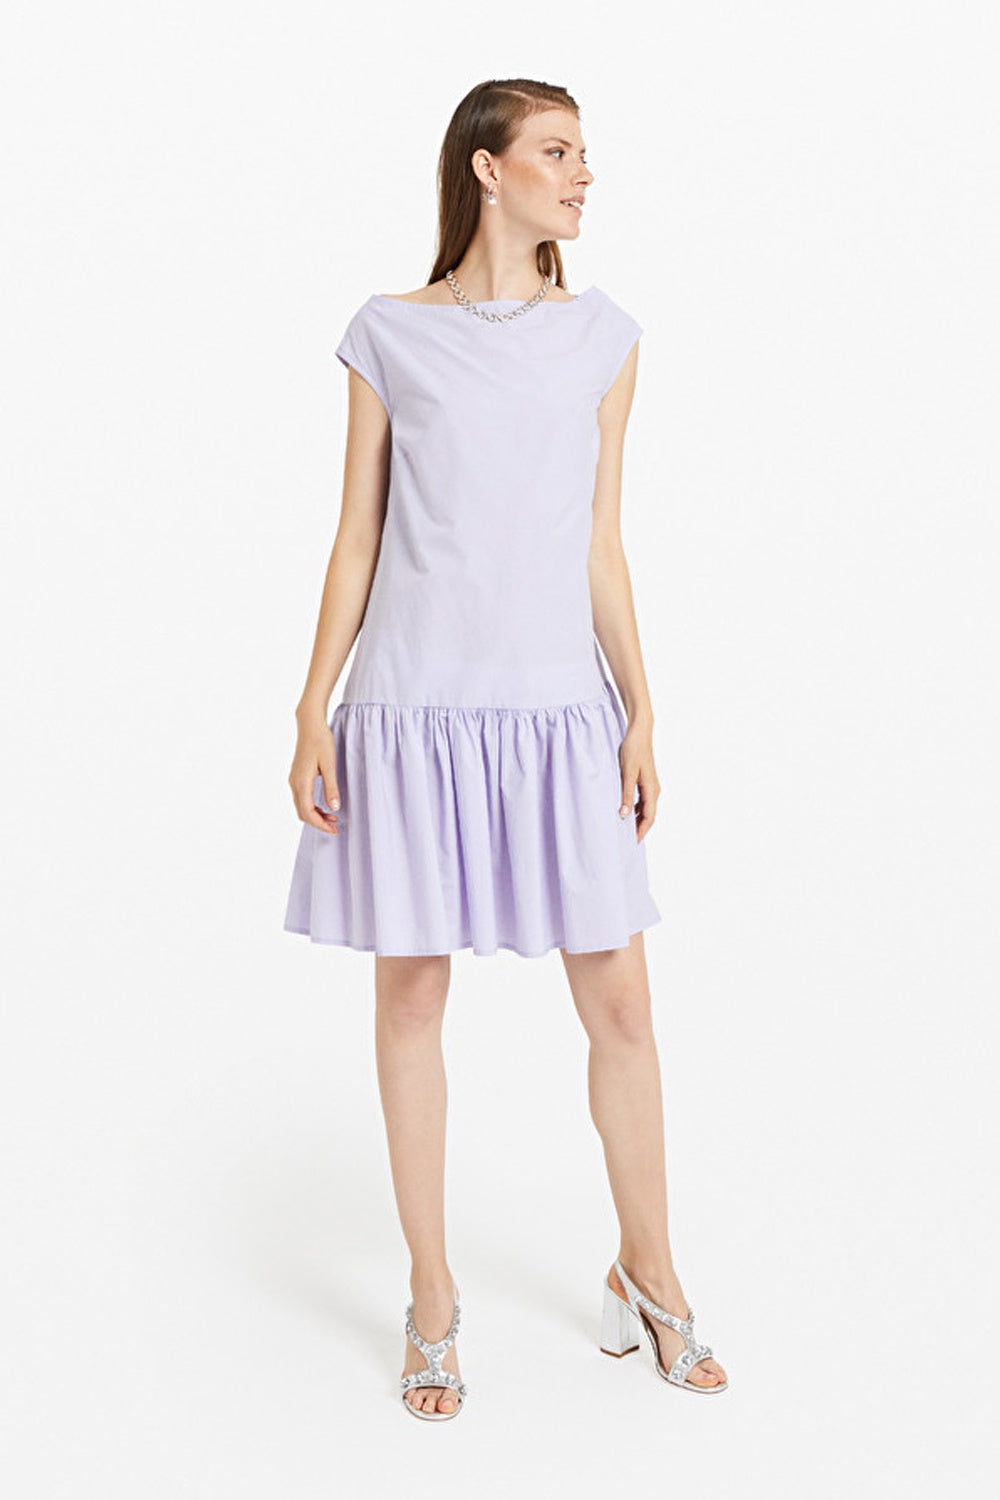 ottodame-DA3948-lavender-dress